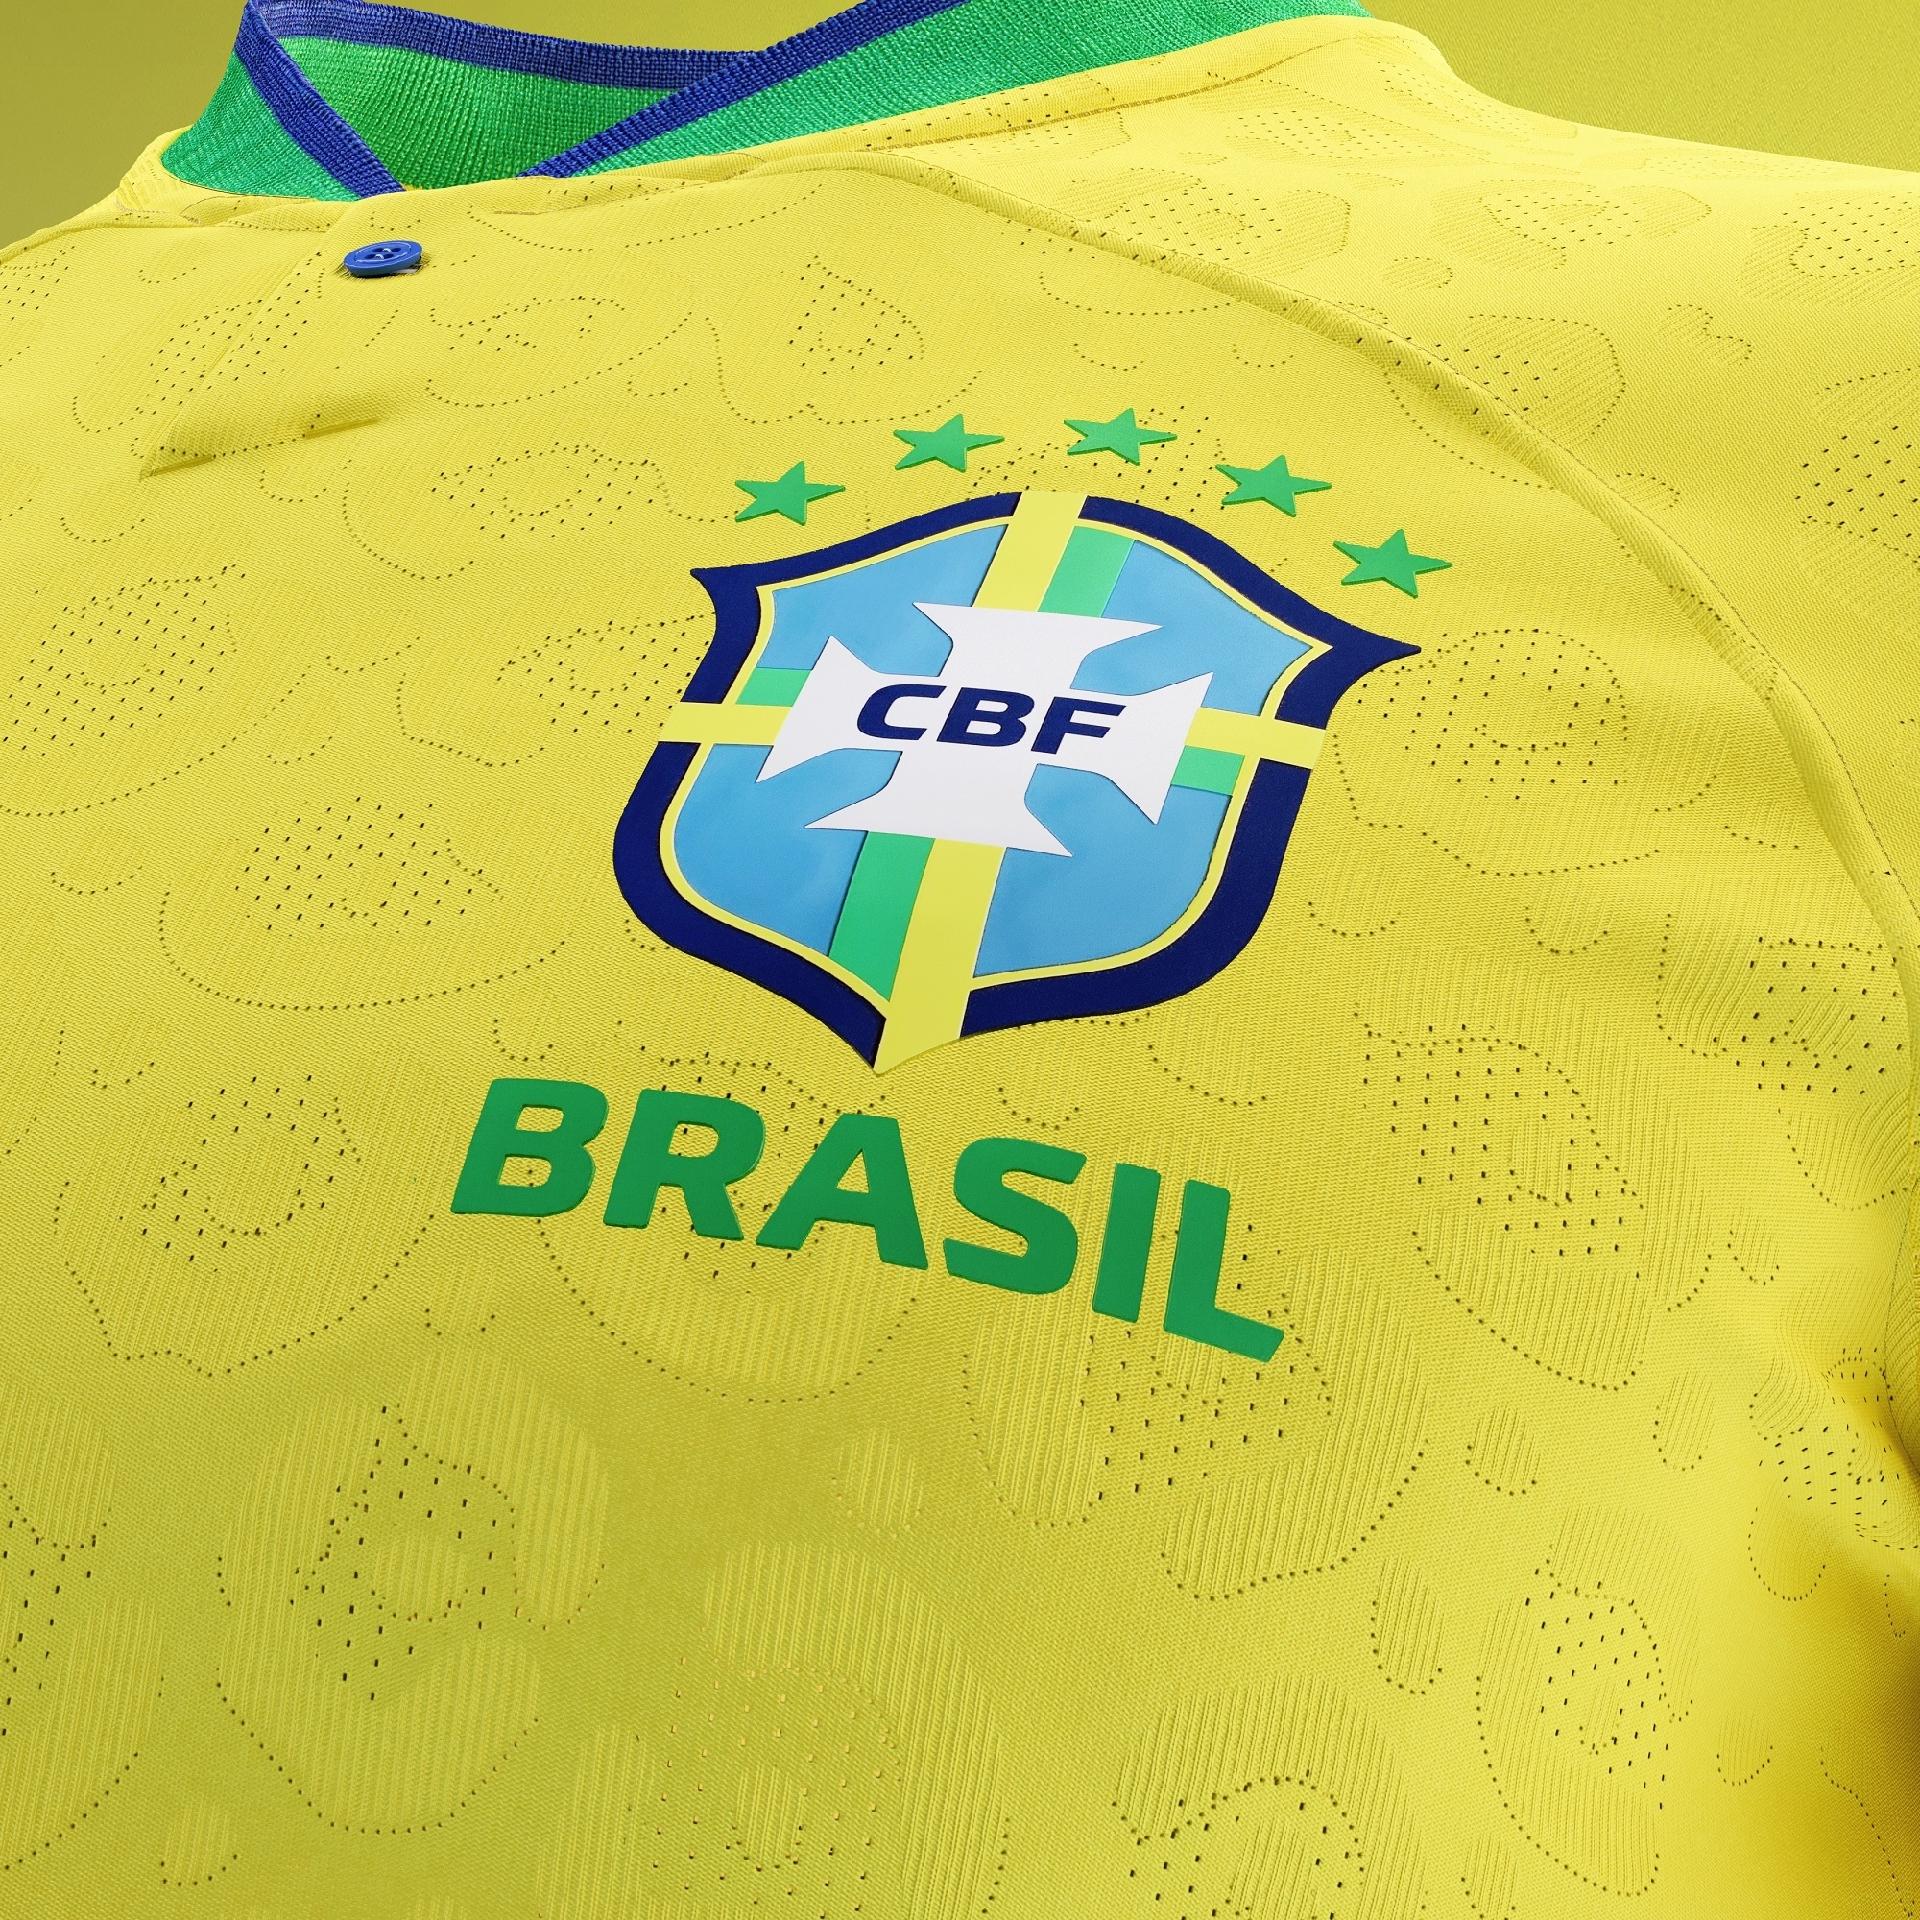 Camisa Brasil Copa do Mundo 2018 Azul Camisola Seleção Brasileira